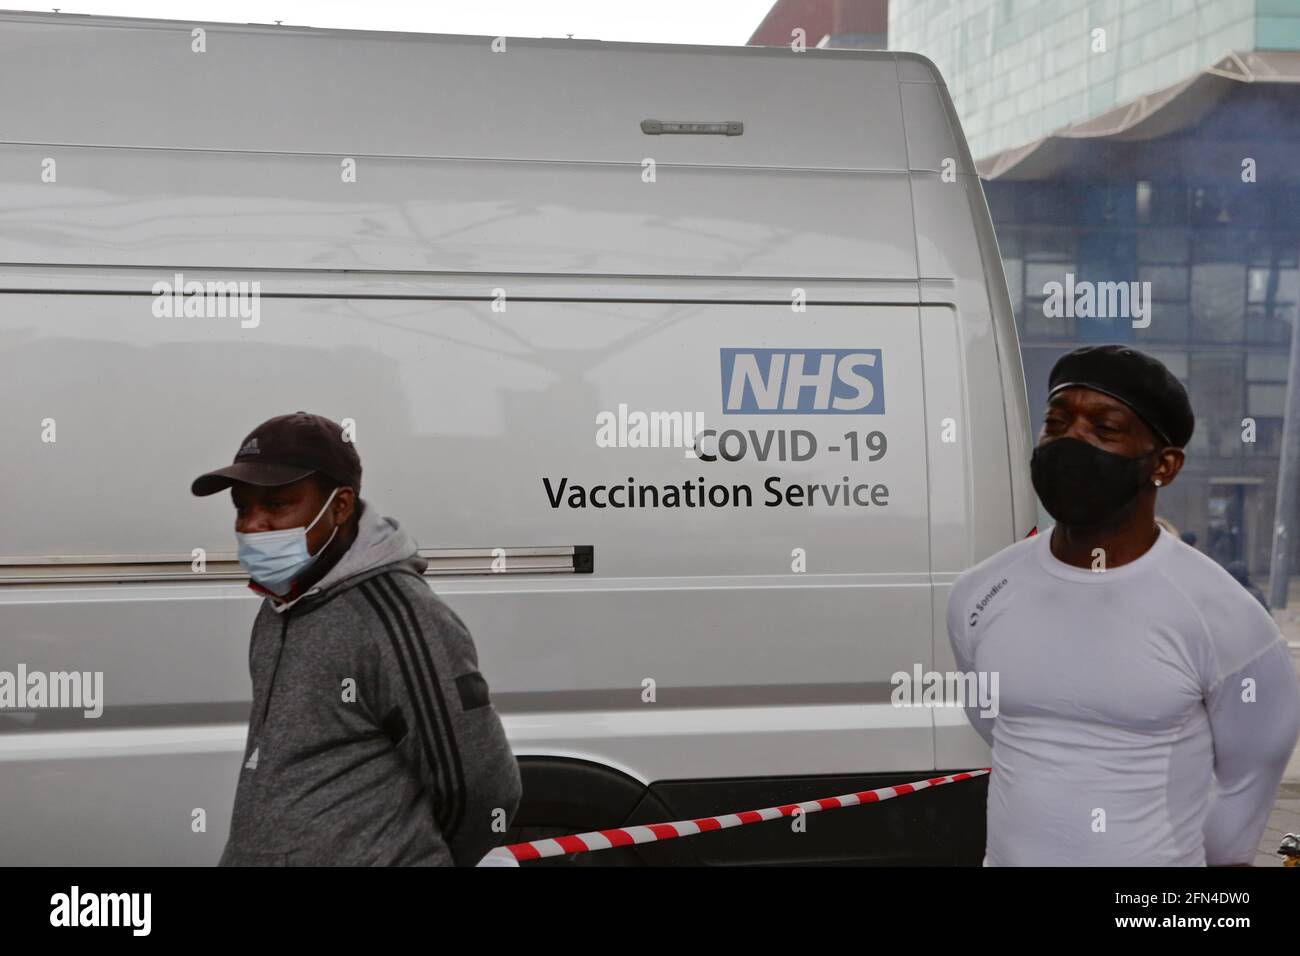 Londra (UK), 13 maggio 2021: Un servizio di vaccinazione mobile Covid-19 visita Peckham nel sud-est di Londra. Le unità si distribuiscono direttamente nei comuni difficili da raggiungere Foto Stock